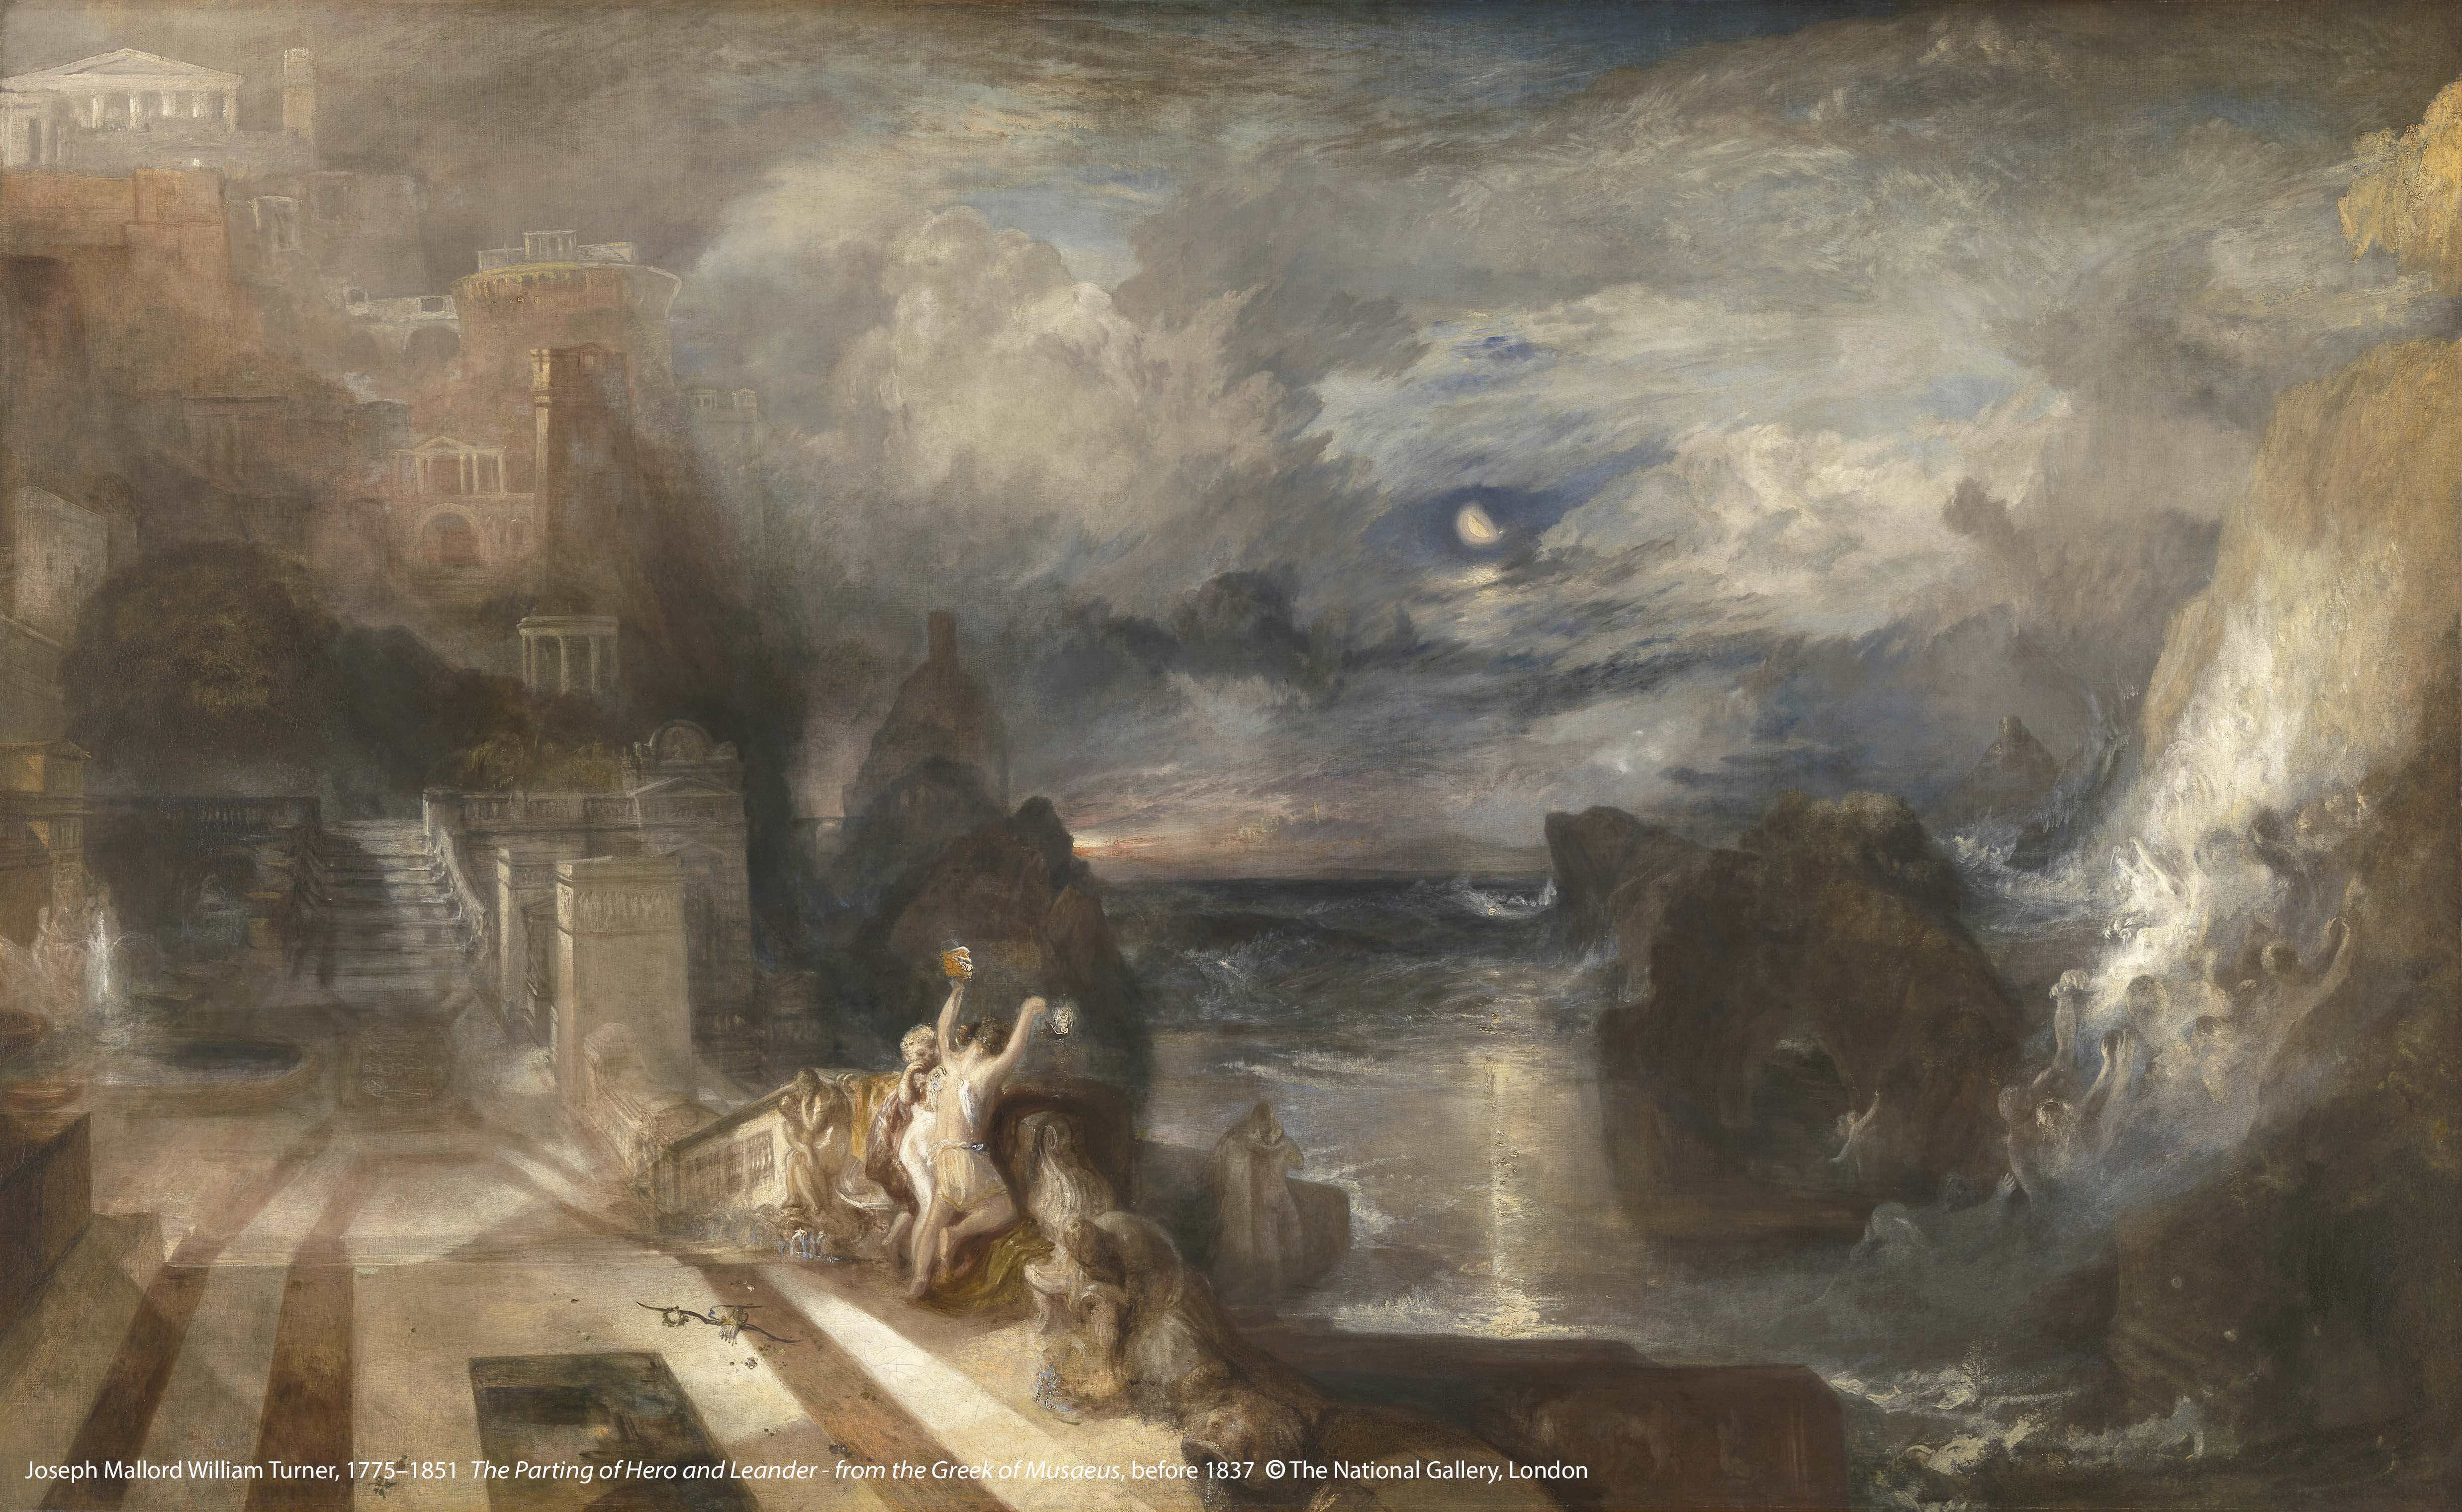 約 瑟 夫 ． 瑪 羅 德 ． 威 廉 ． 透 納 （ 1 7 7 5 - 1 8 5 1 ） 作 品 〈 海 洛 和 利 安 德 的 離 別 〉 （ 出 自 希 臘 詩 人 穆 塞 厄 斯 ） ， 1 8 3 7 年 之 前 創 作 。 圖 / 英 國 國 家 藝 廊 、 奇 美 博 物 館 提 供 